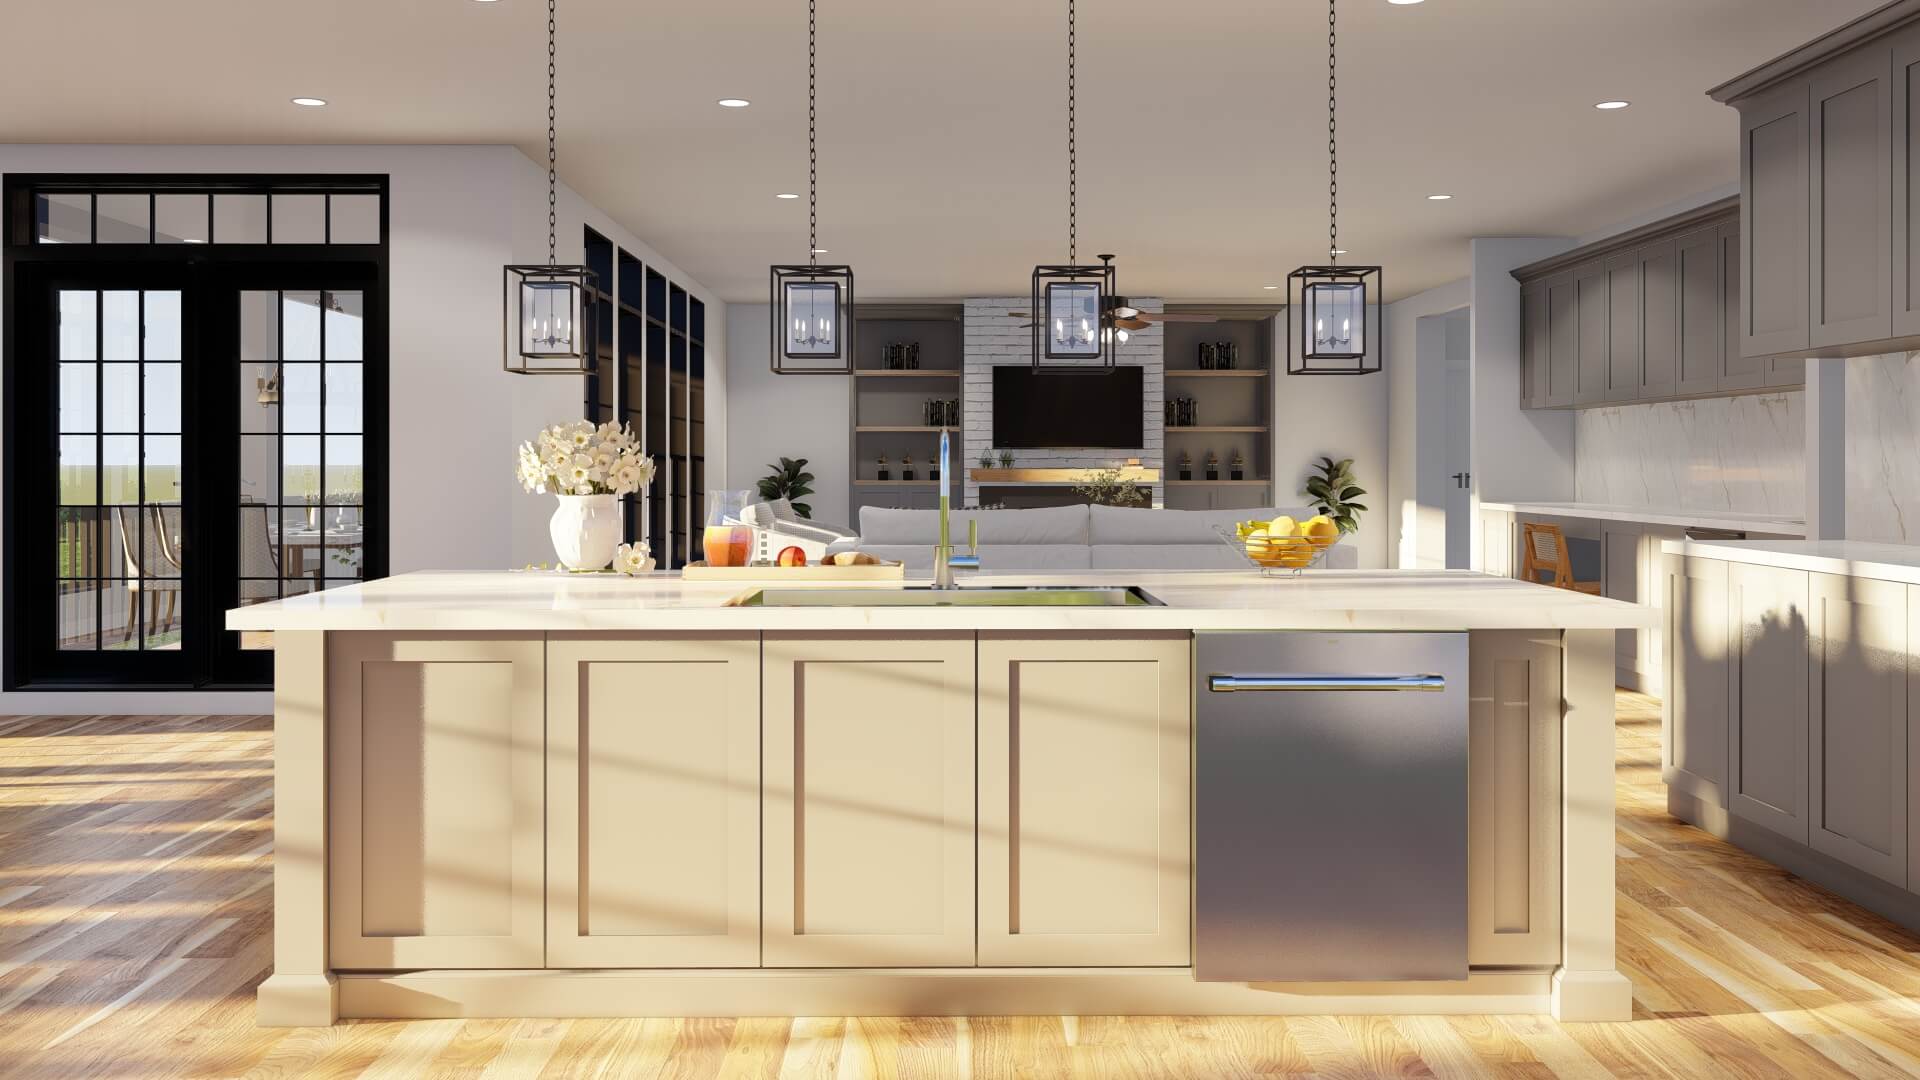 interior_kitchen_island_image